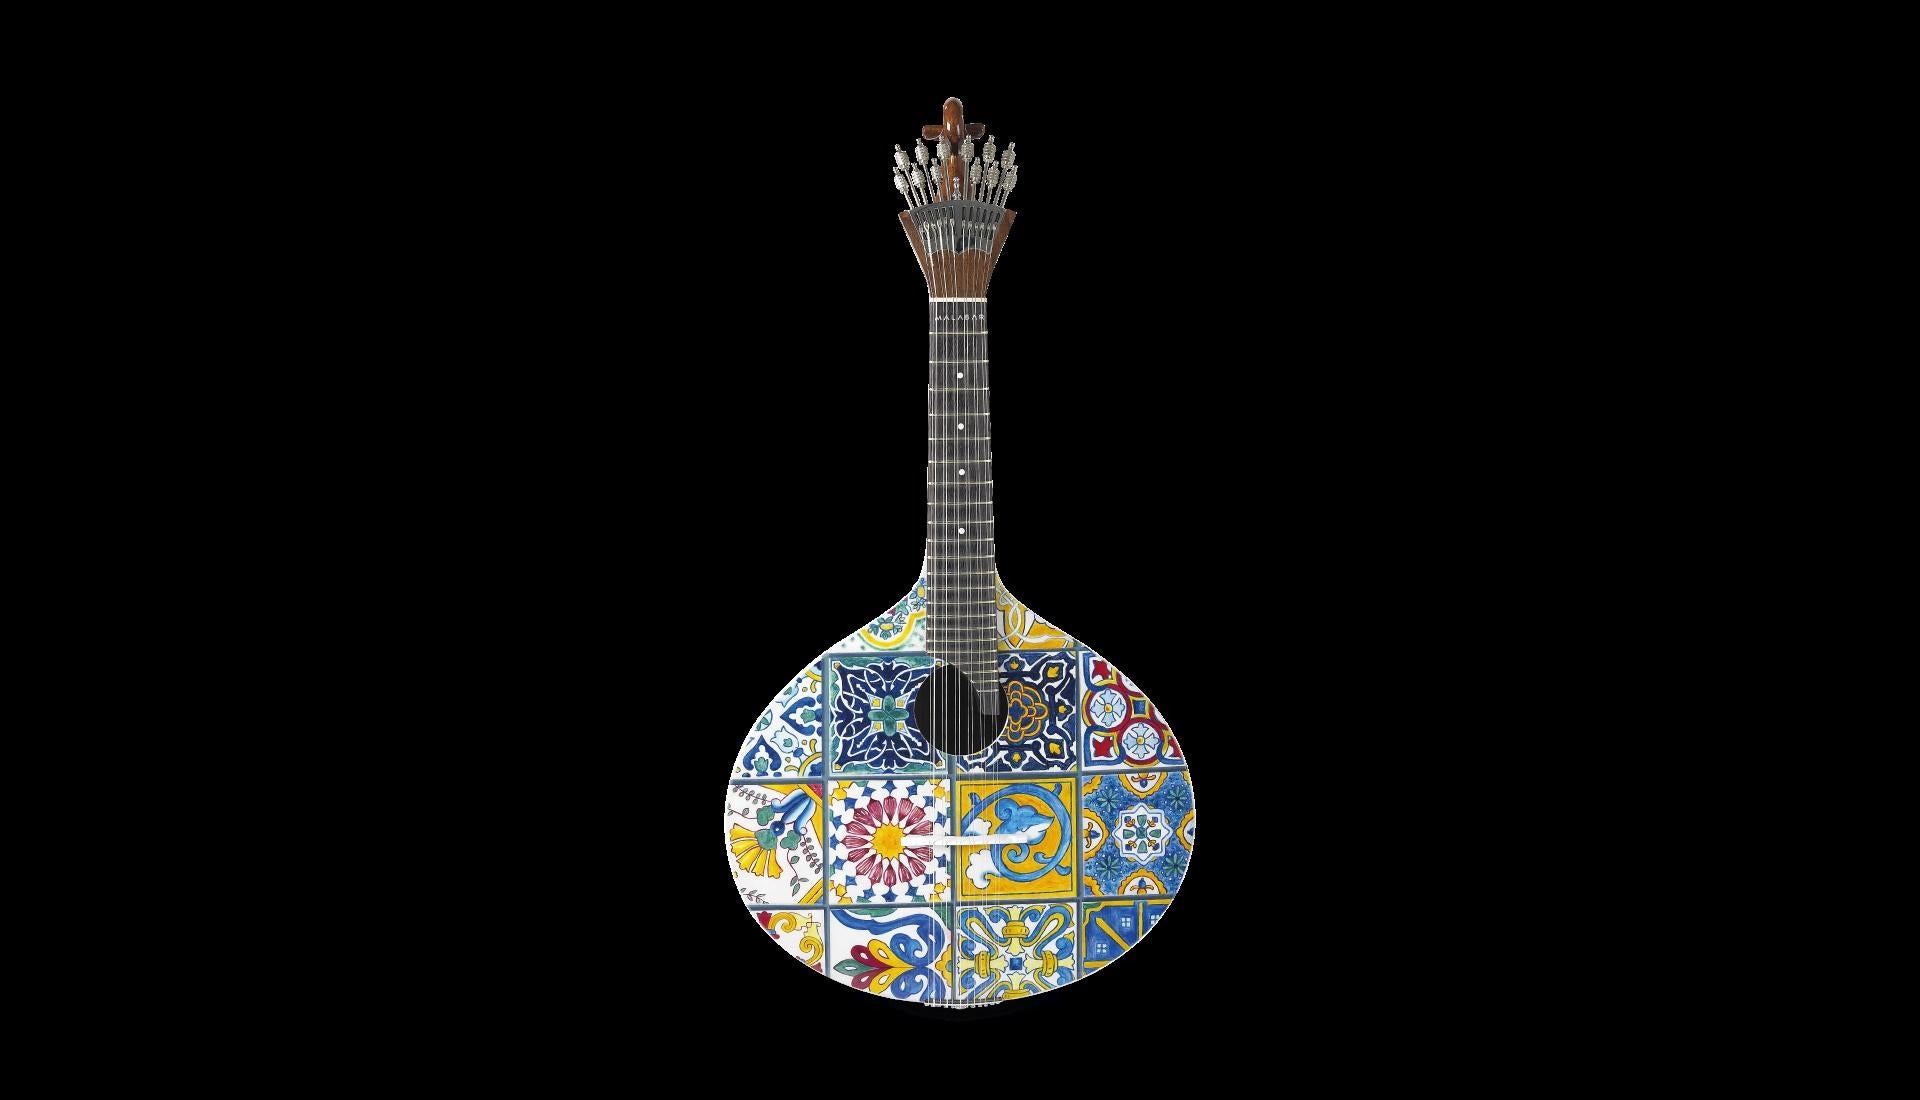 La guitare portugaise Azulejo I+I est un hommage à l'expression artistique d'une nation. L'histoire du peuple est retranscrite sur les pièces de céramique originales, peintes de couleurs contrastées, qui ornent les murs du pays balnéaire : les